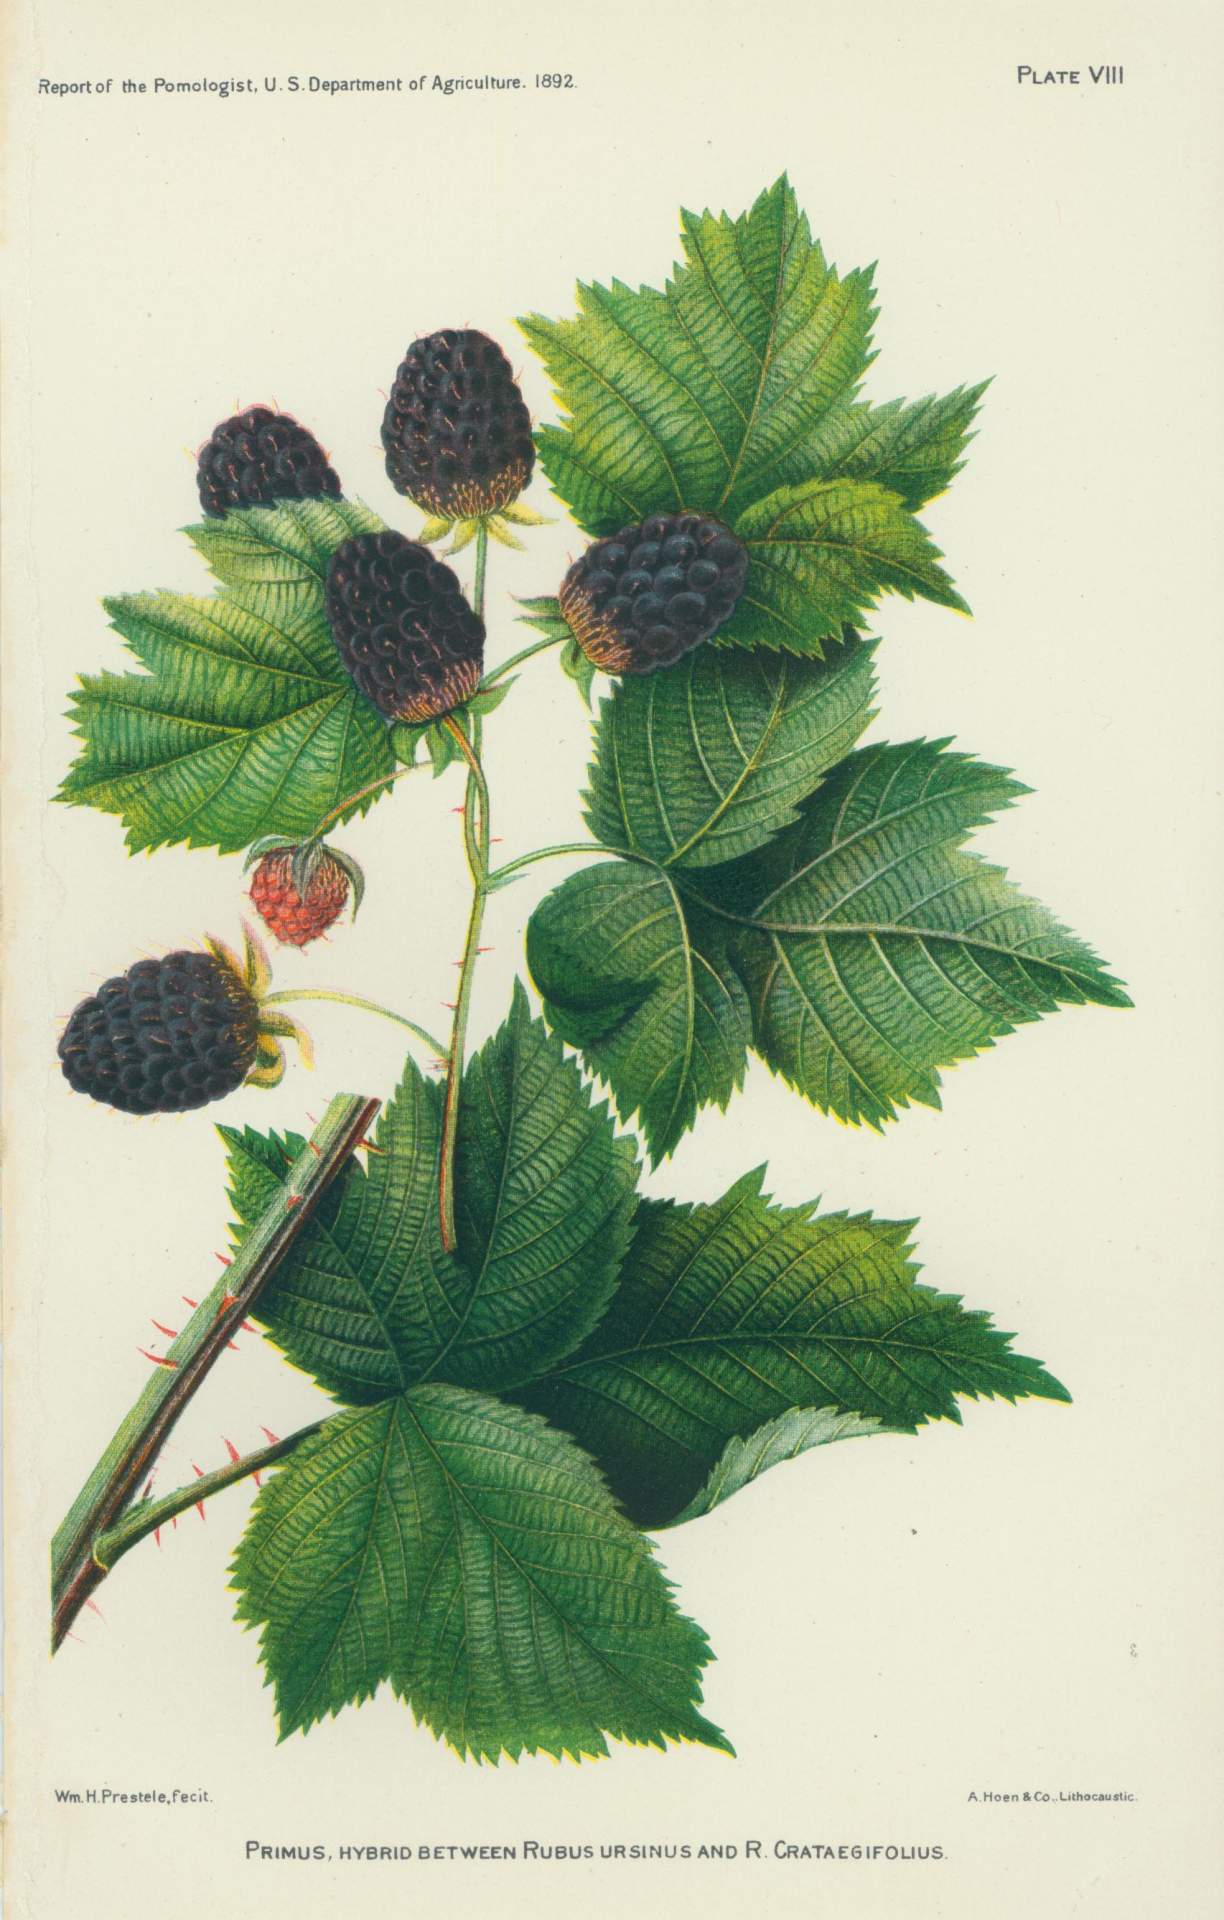 Primus, Hybrid Between Rubus Ursinus And R. Crataegifolius